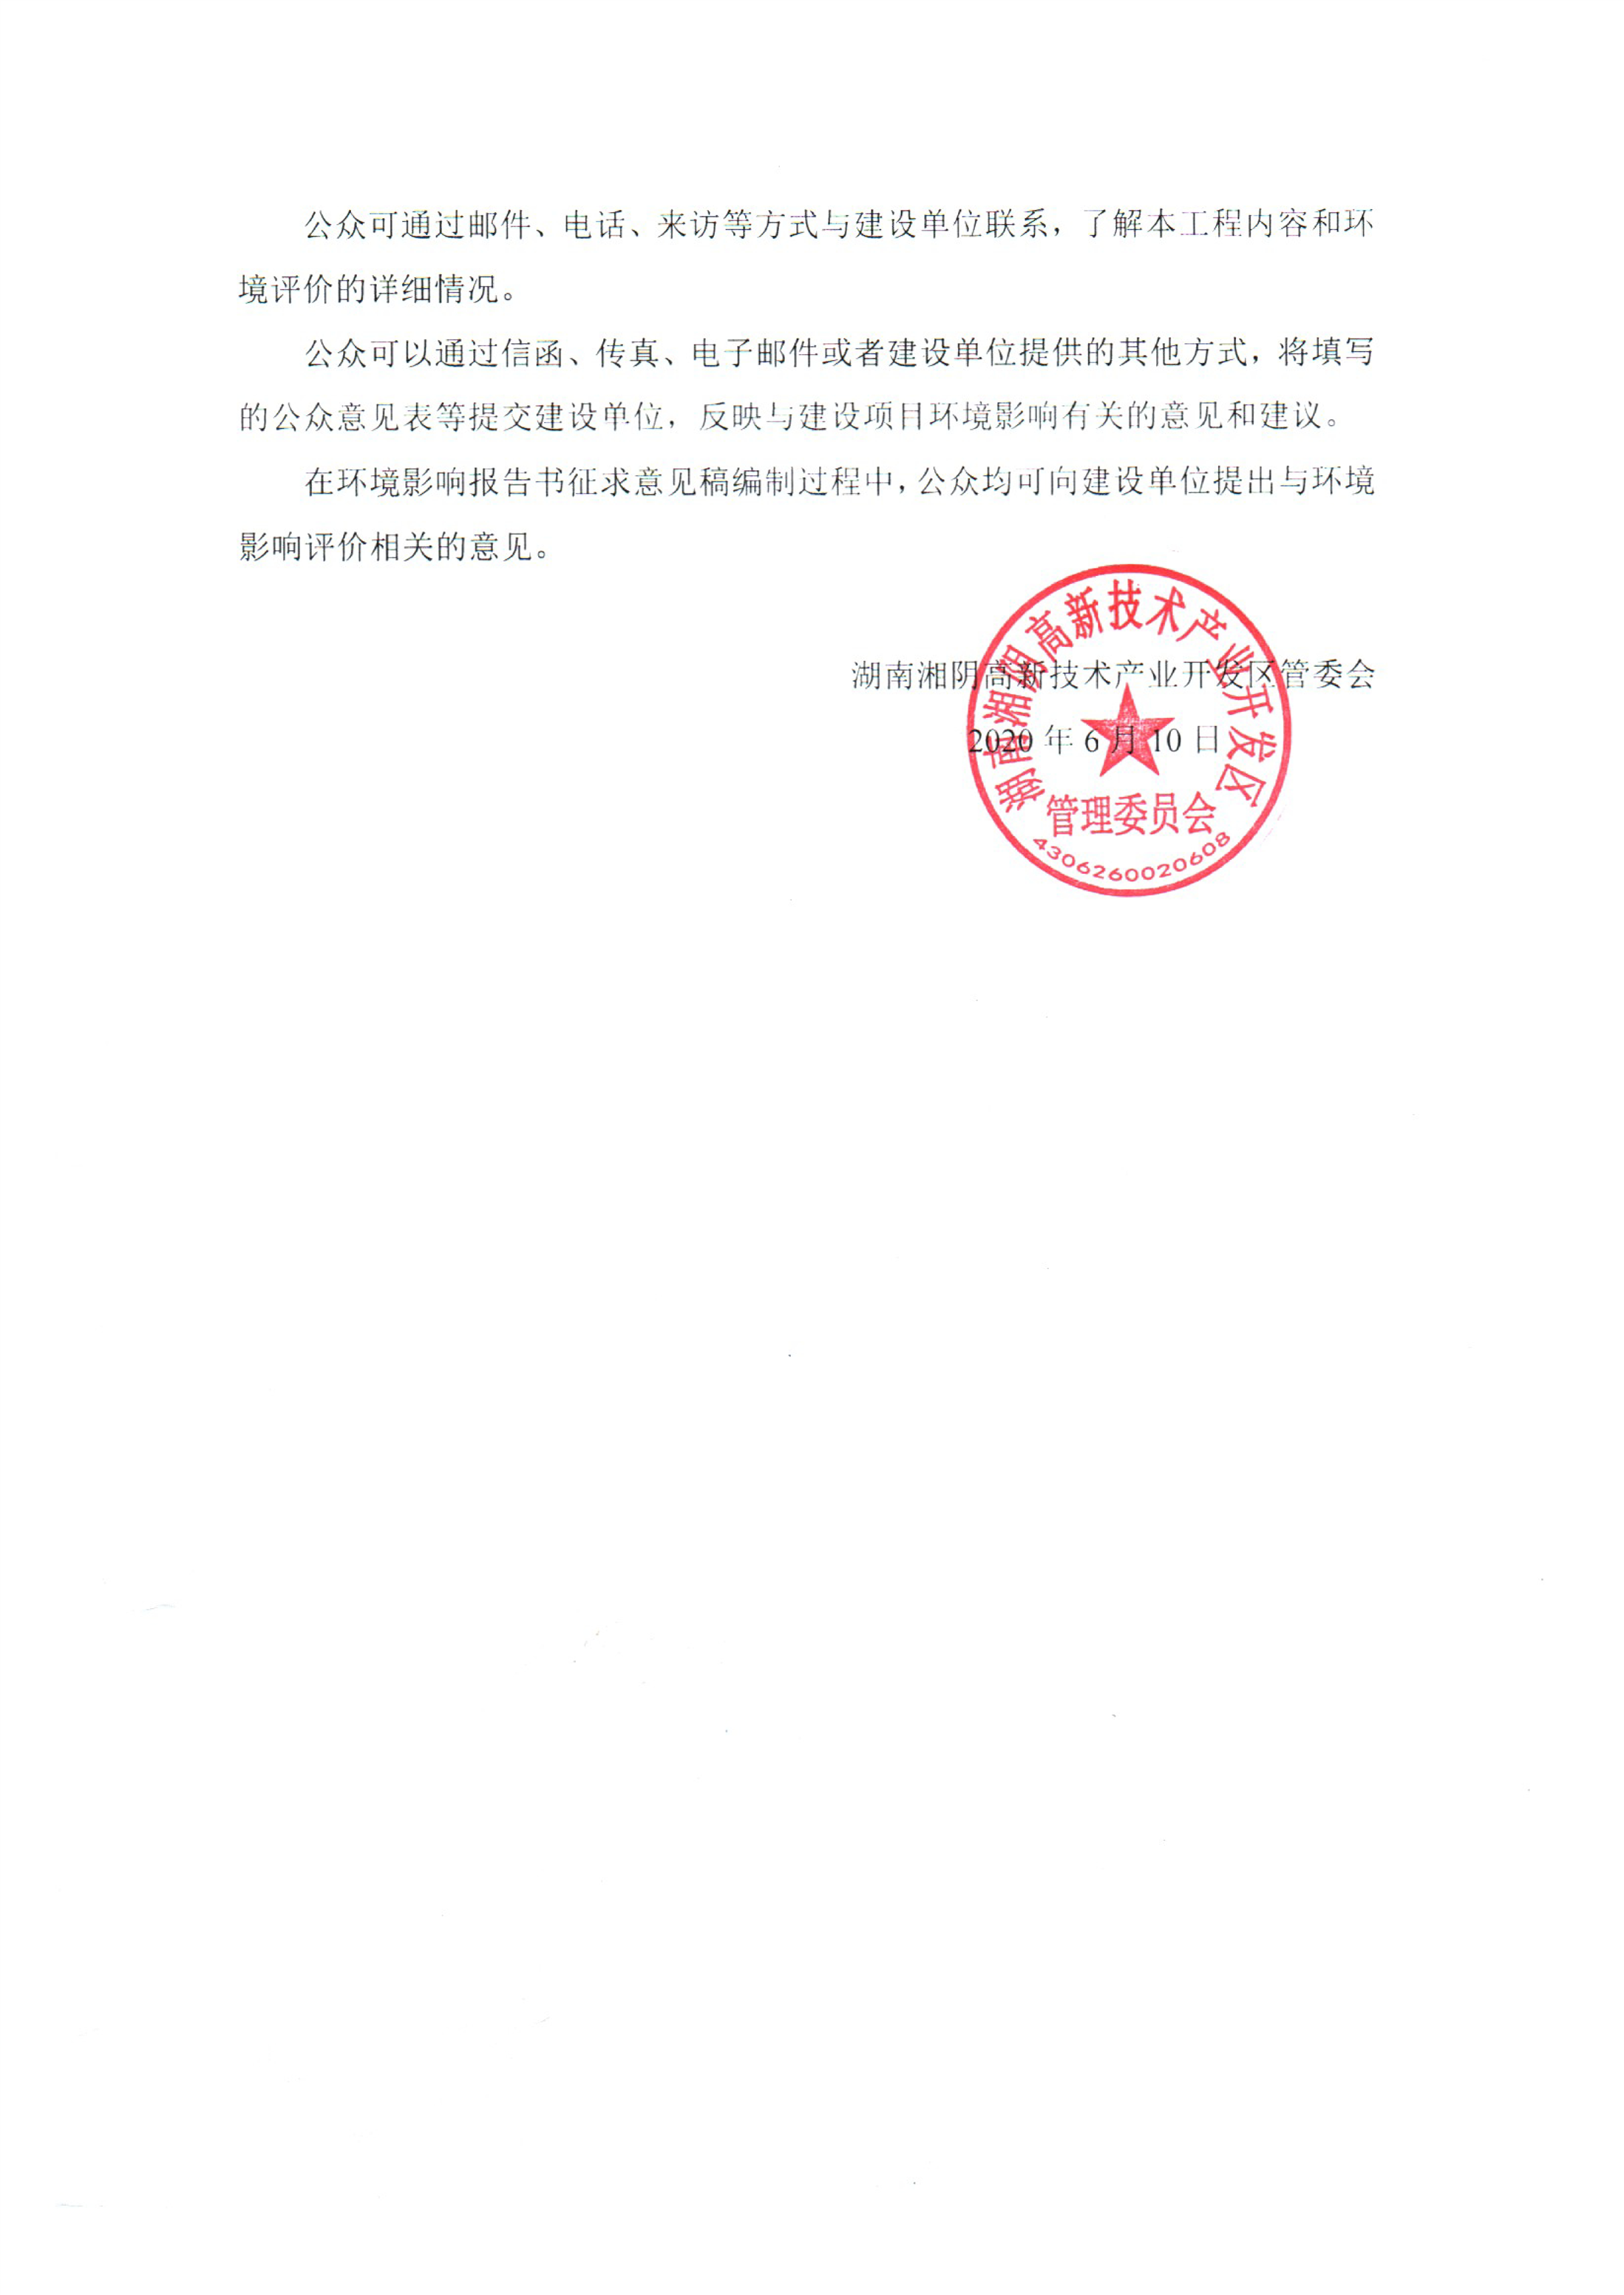 湖南湘阴工业园区规划环境影响跟踪评价环境影响评价信息公示-湘阴县政府网